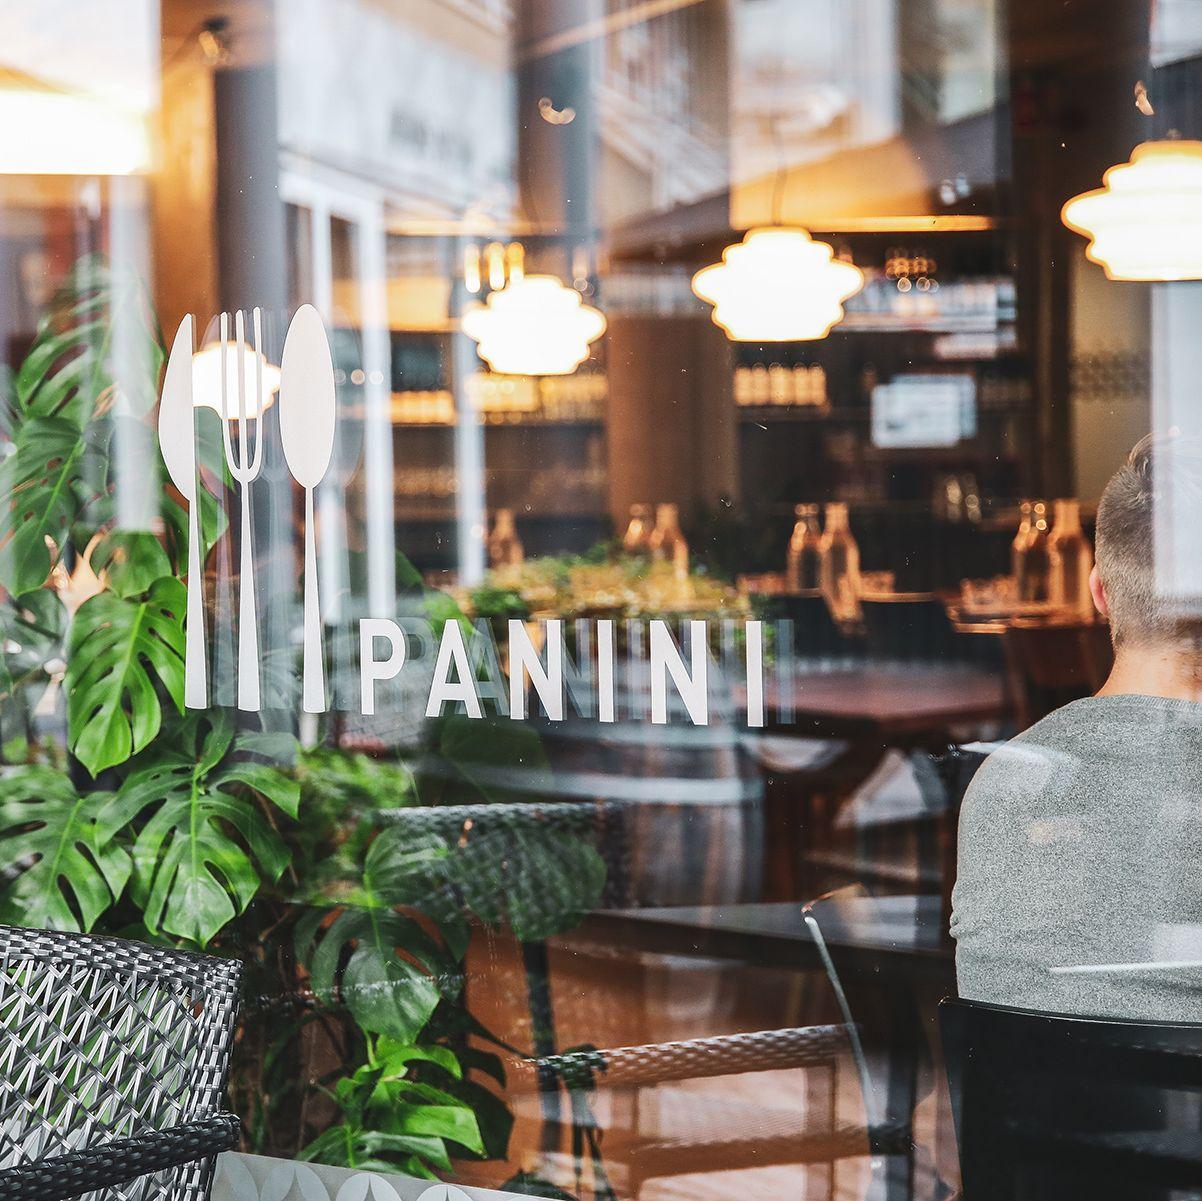 Ravintola Panini ikkunan läpi katsottuna, asiakkaita istumassa pöydissä. Ikkunassa lukee valkoisilla kirjaimilla ravintolan nimi.